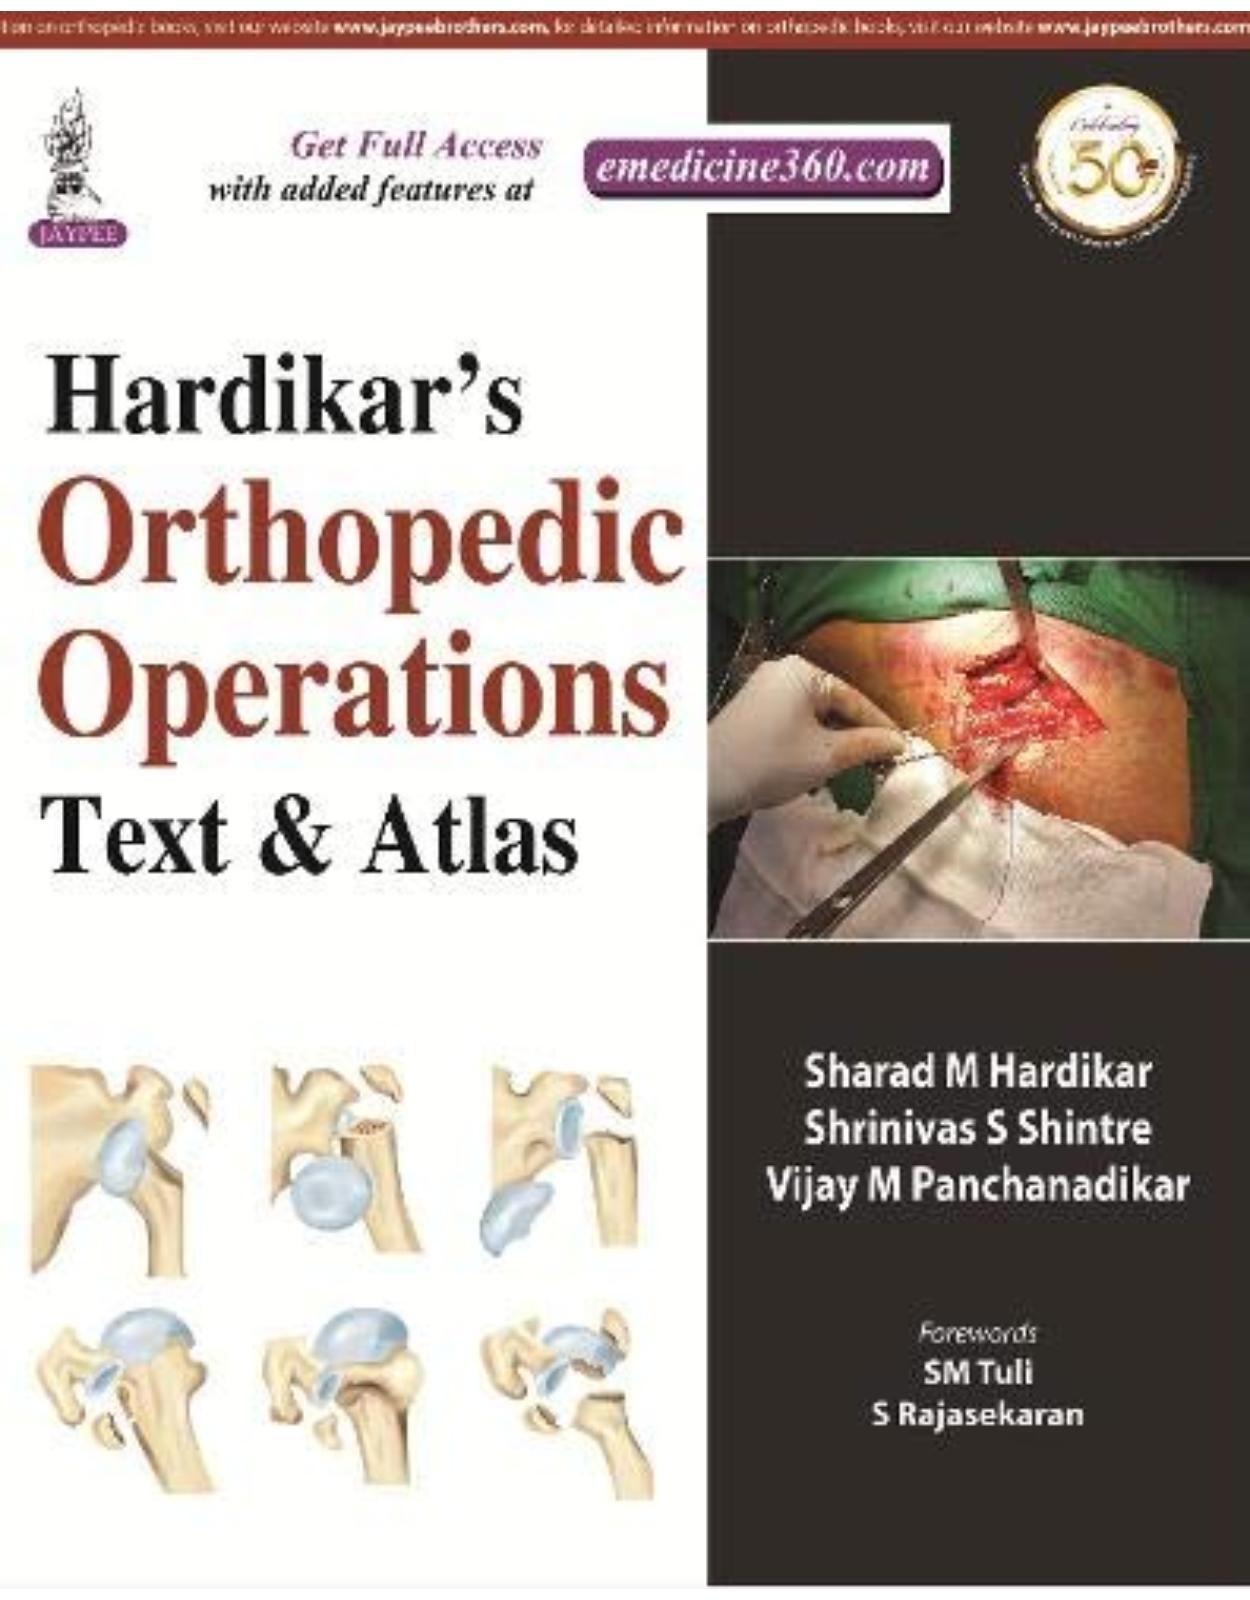 Hardikar’s Orthopedic Operations